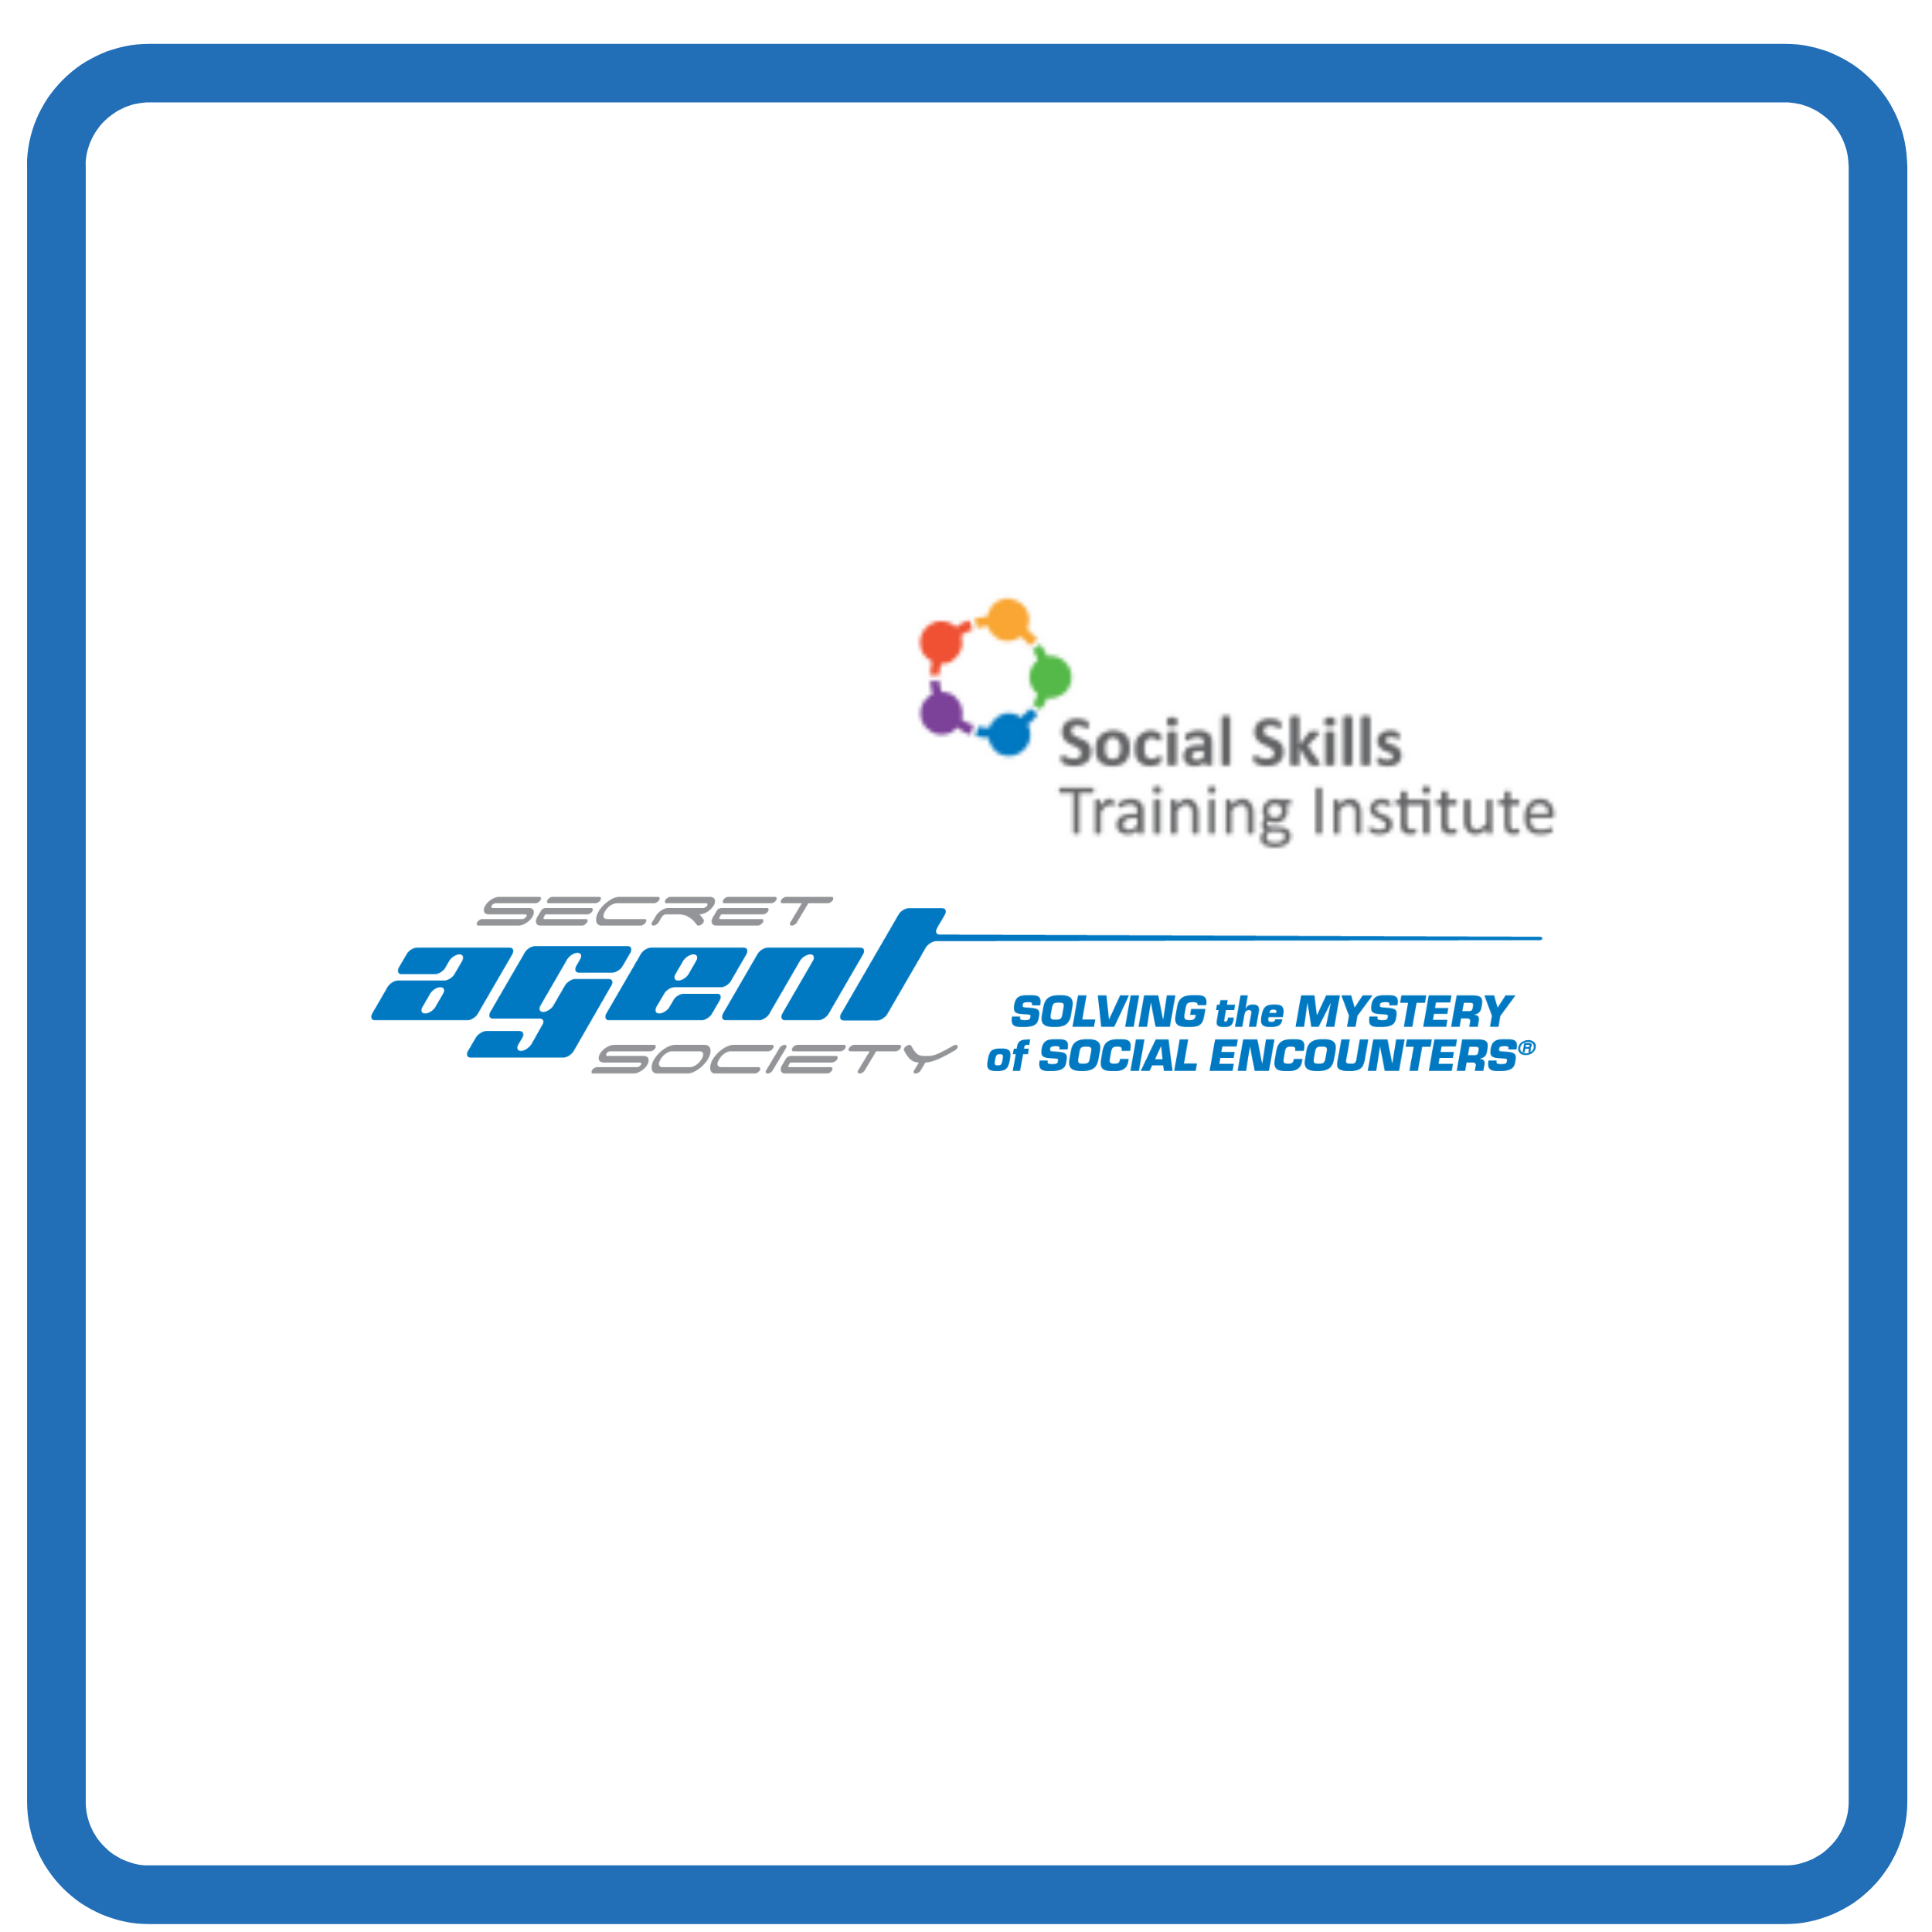 Social Skills Training Institute